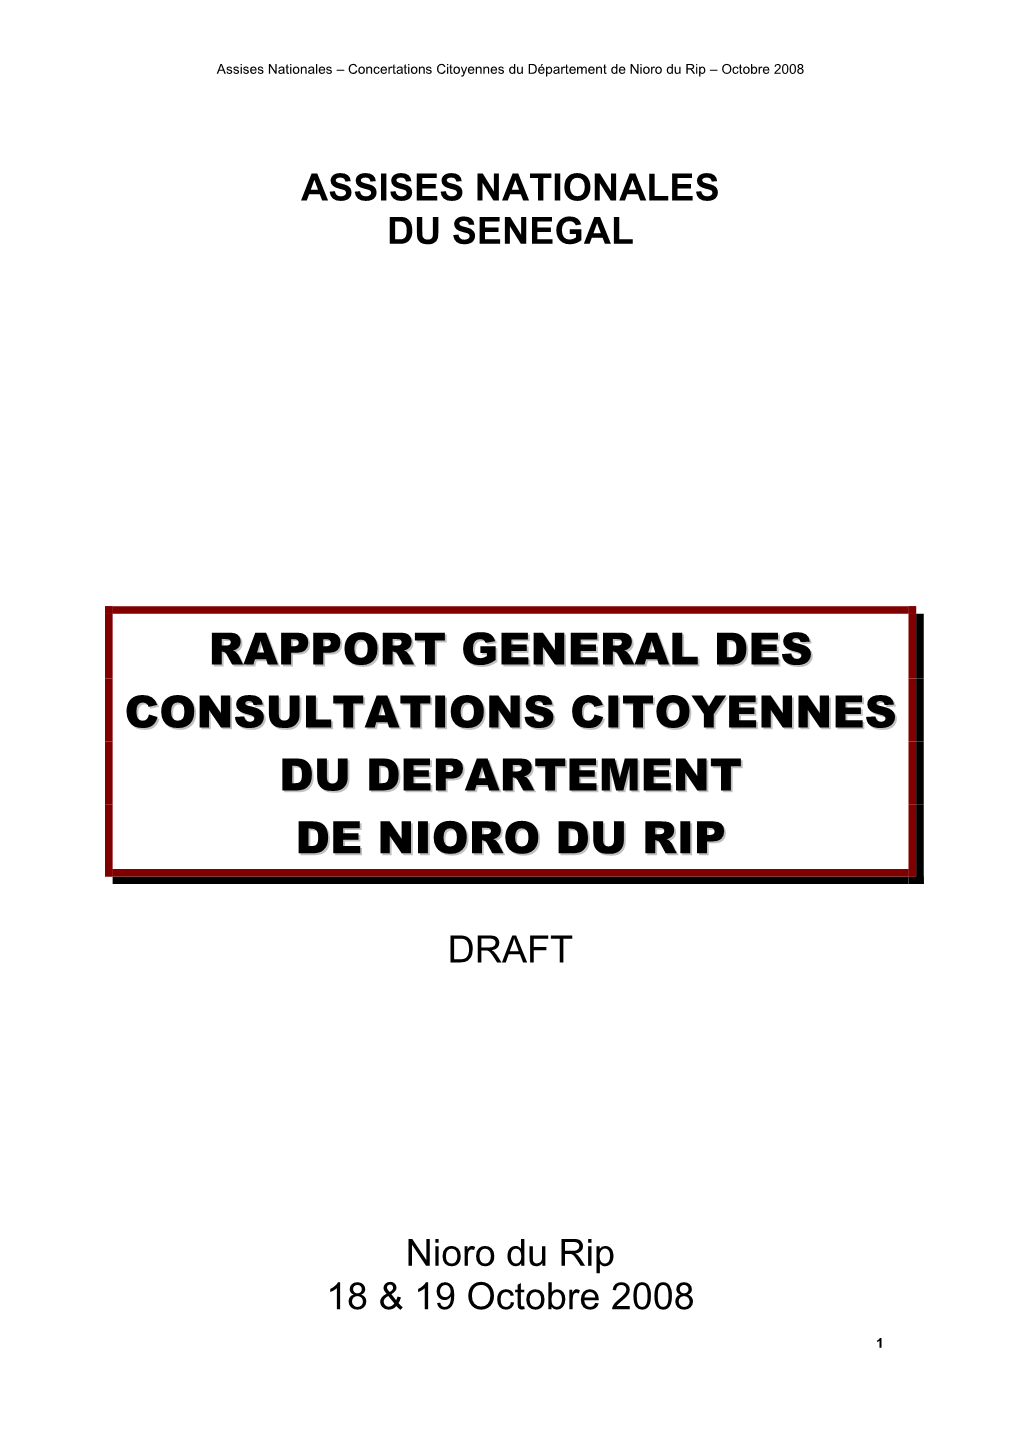 Rapport General Des Consultations Citoyennes Du Departement De